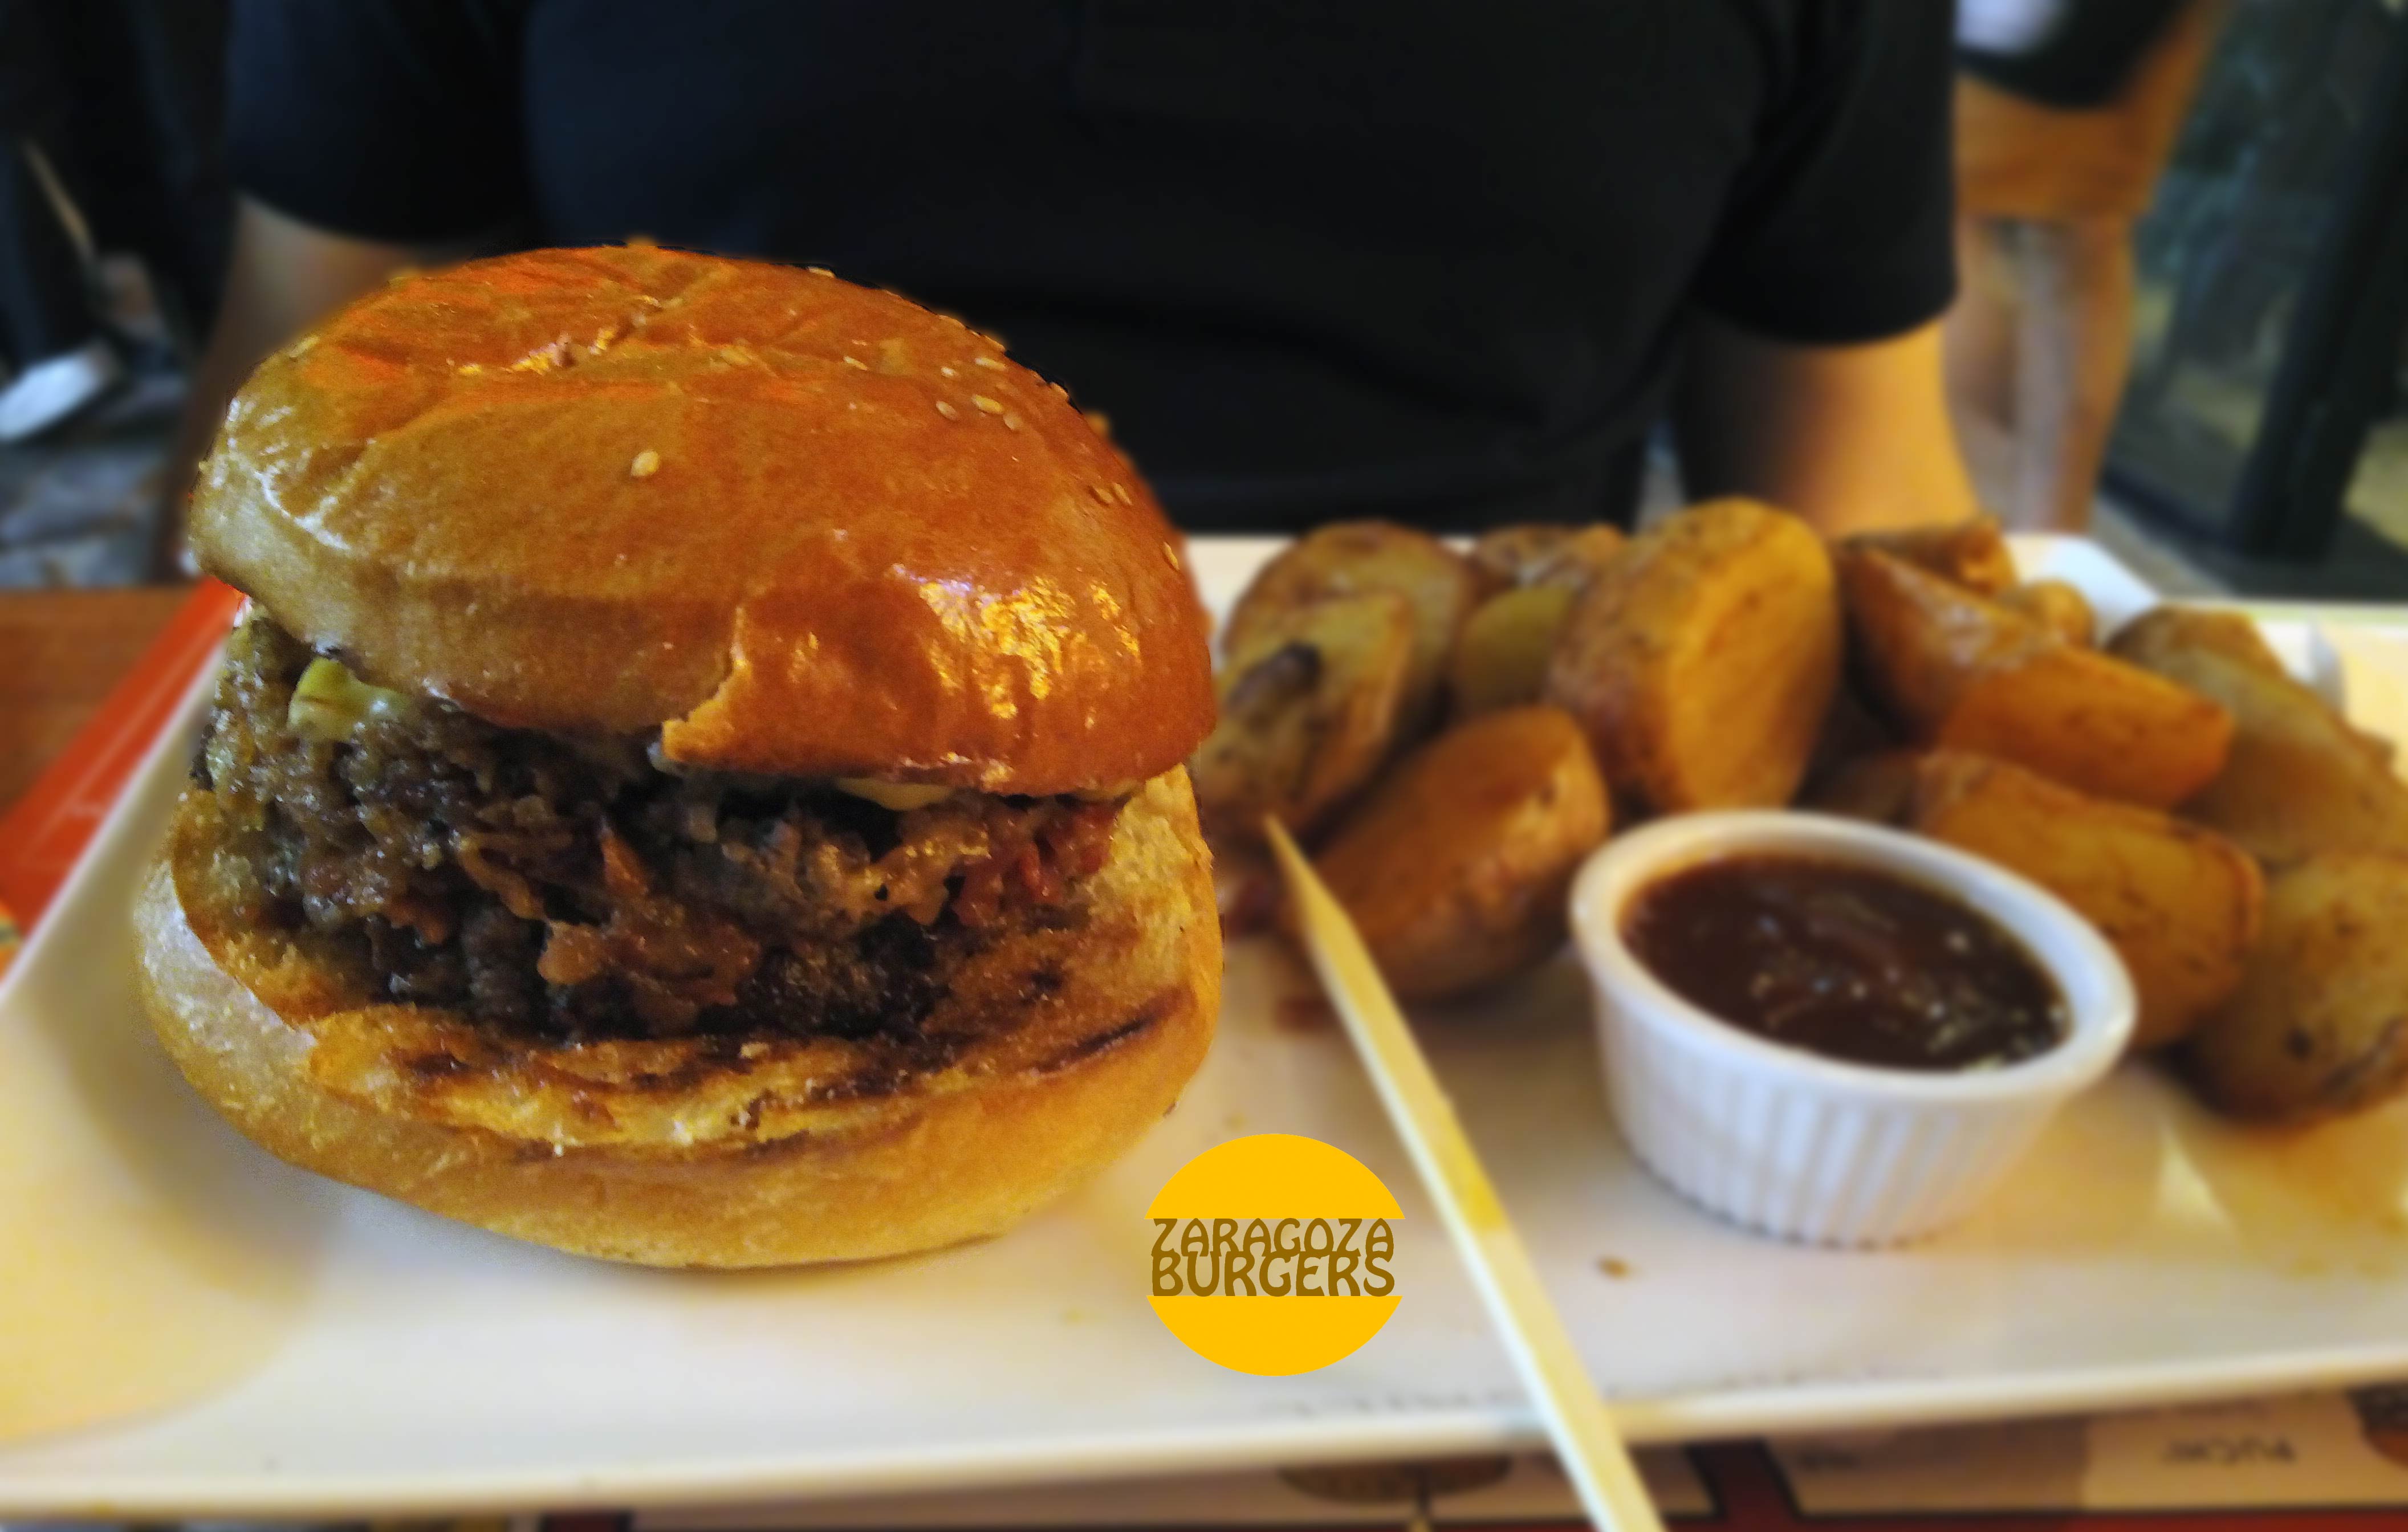 Goiko Grill: el reinado de Kevin Bacon – Zaragoza Burgers